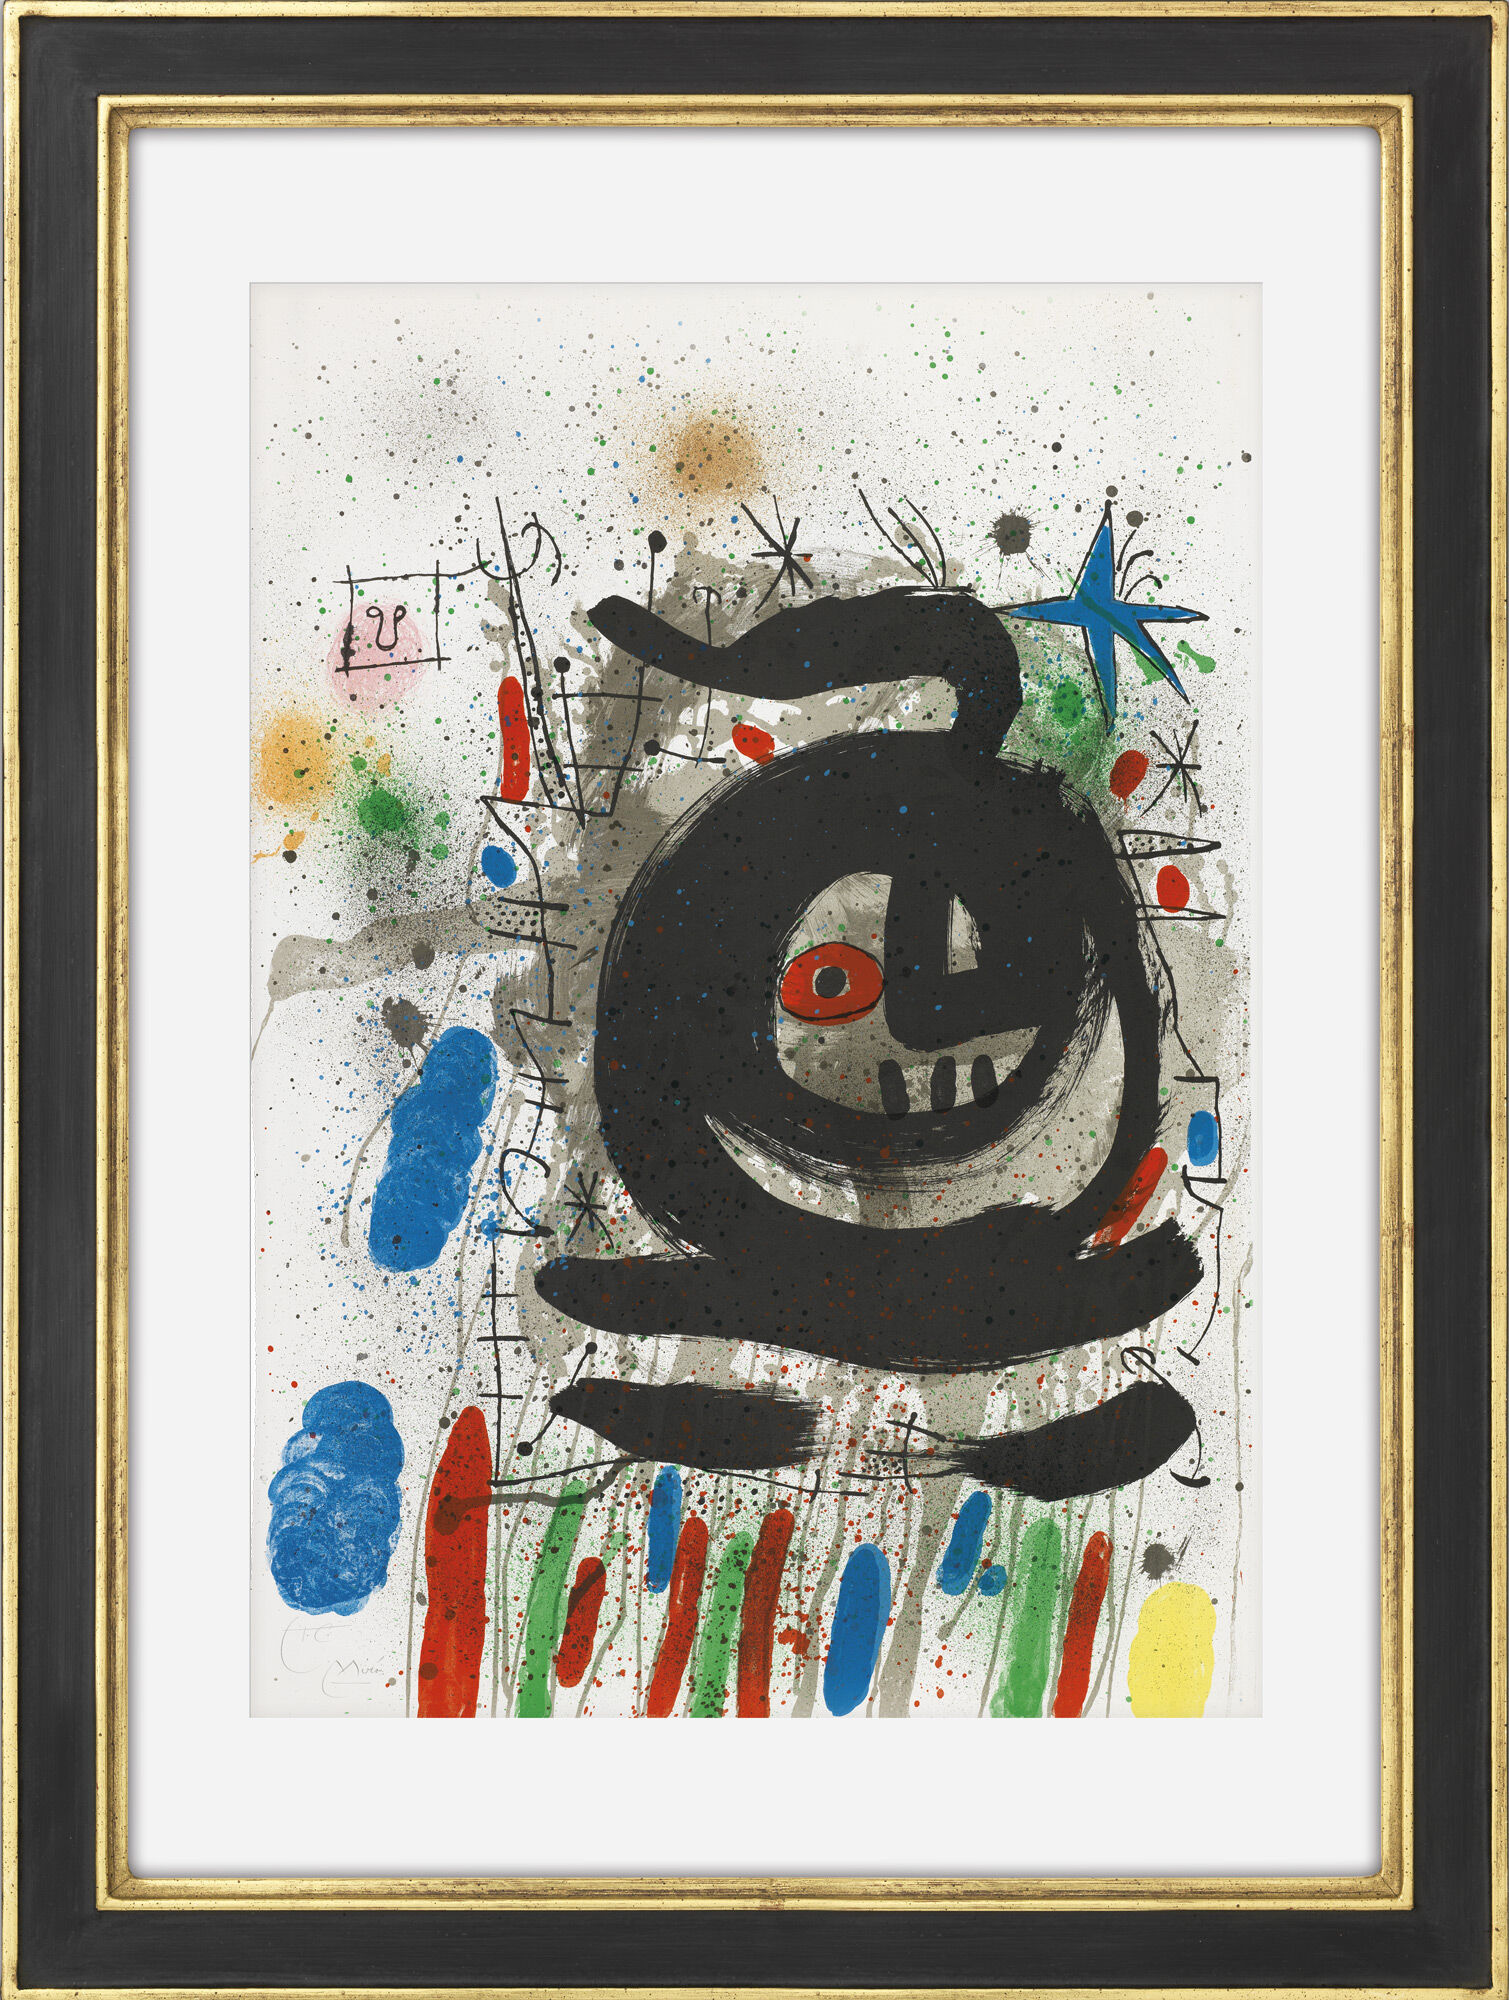 Beeld "Compositie voor Club 49, Barcelona" (1968) von Joan Miró